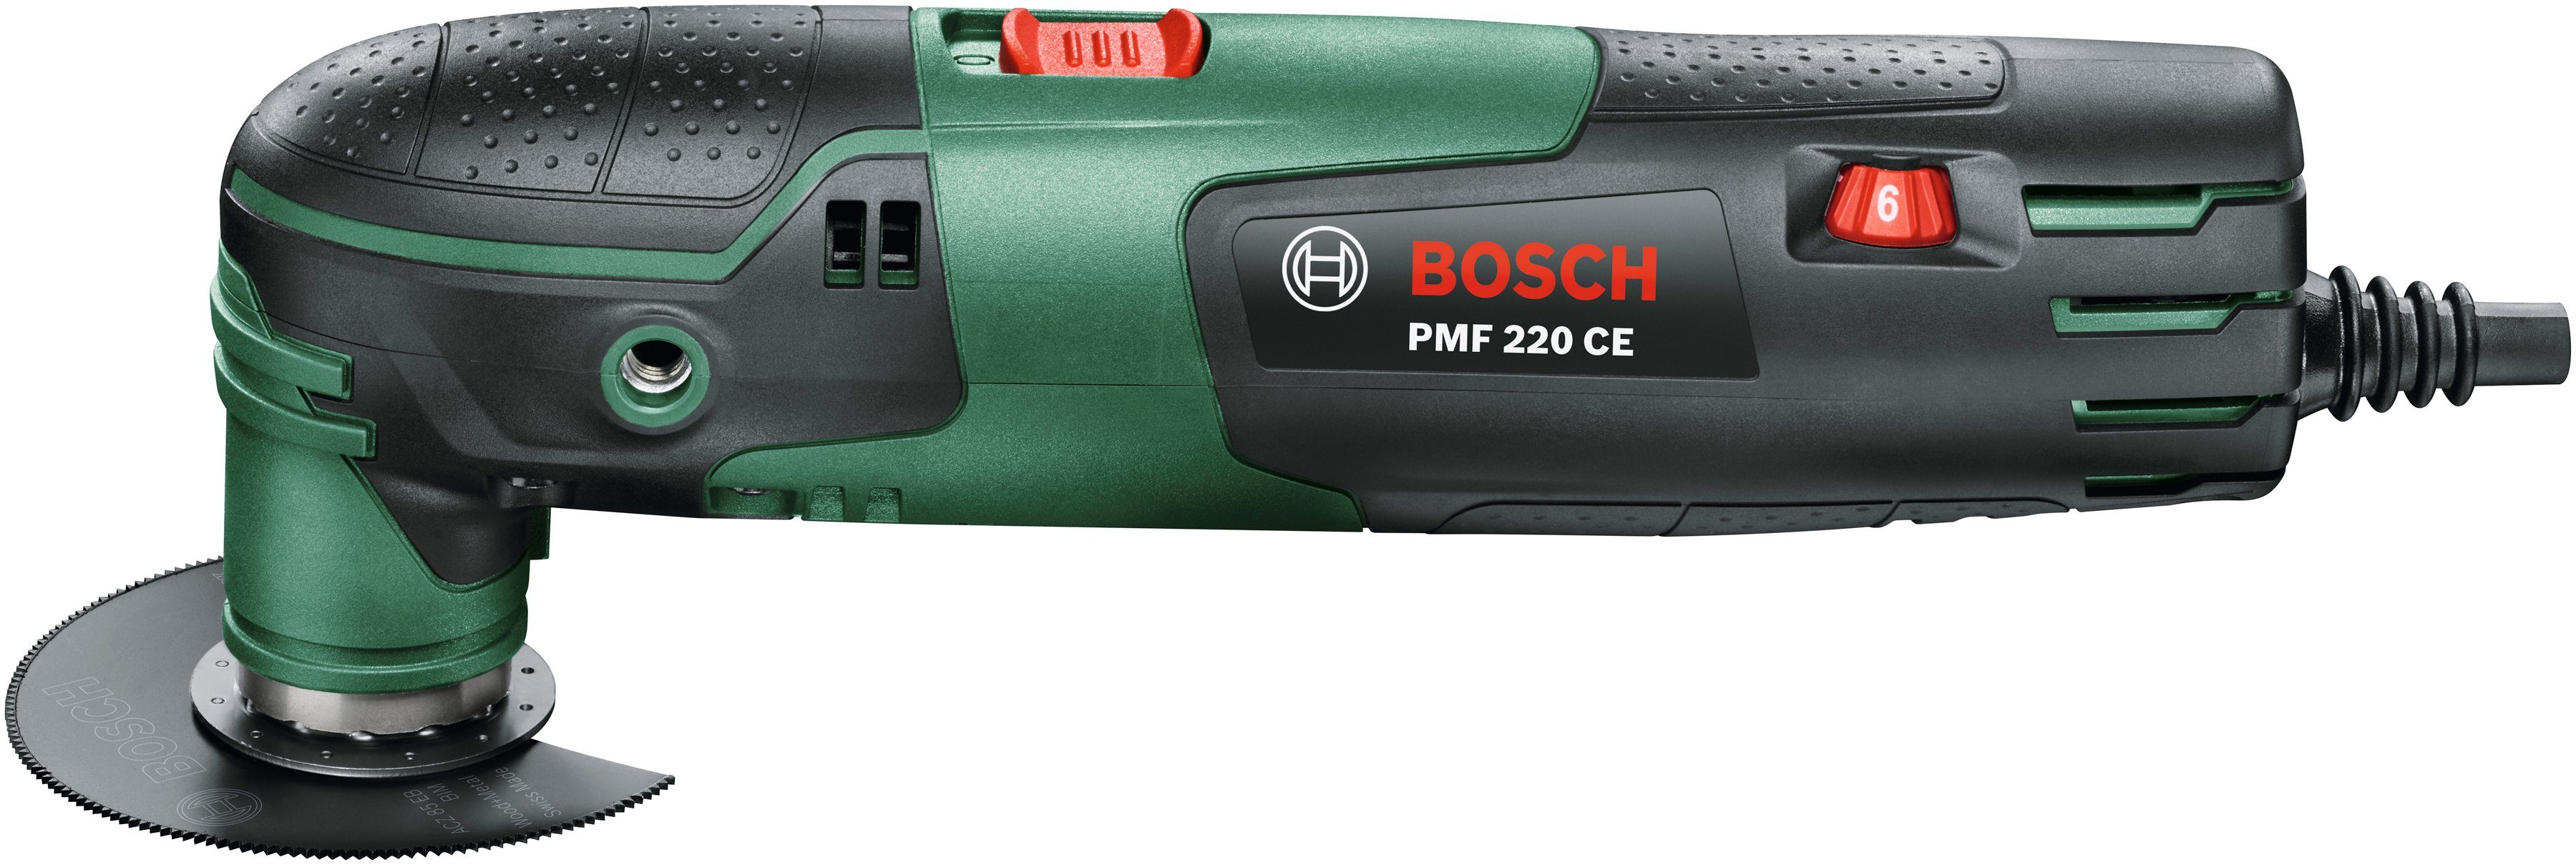 Bosch Home CE, PMF und Elektro-Multifunktionswerkzeug Zubehör Garden 220 inkl. 220 W, & Kunststoffkoffer